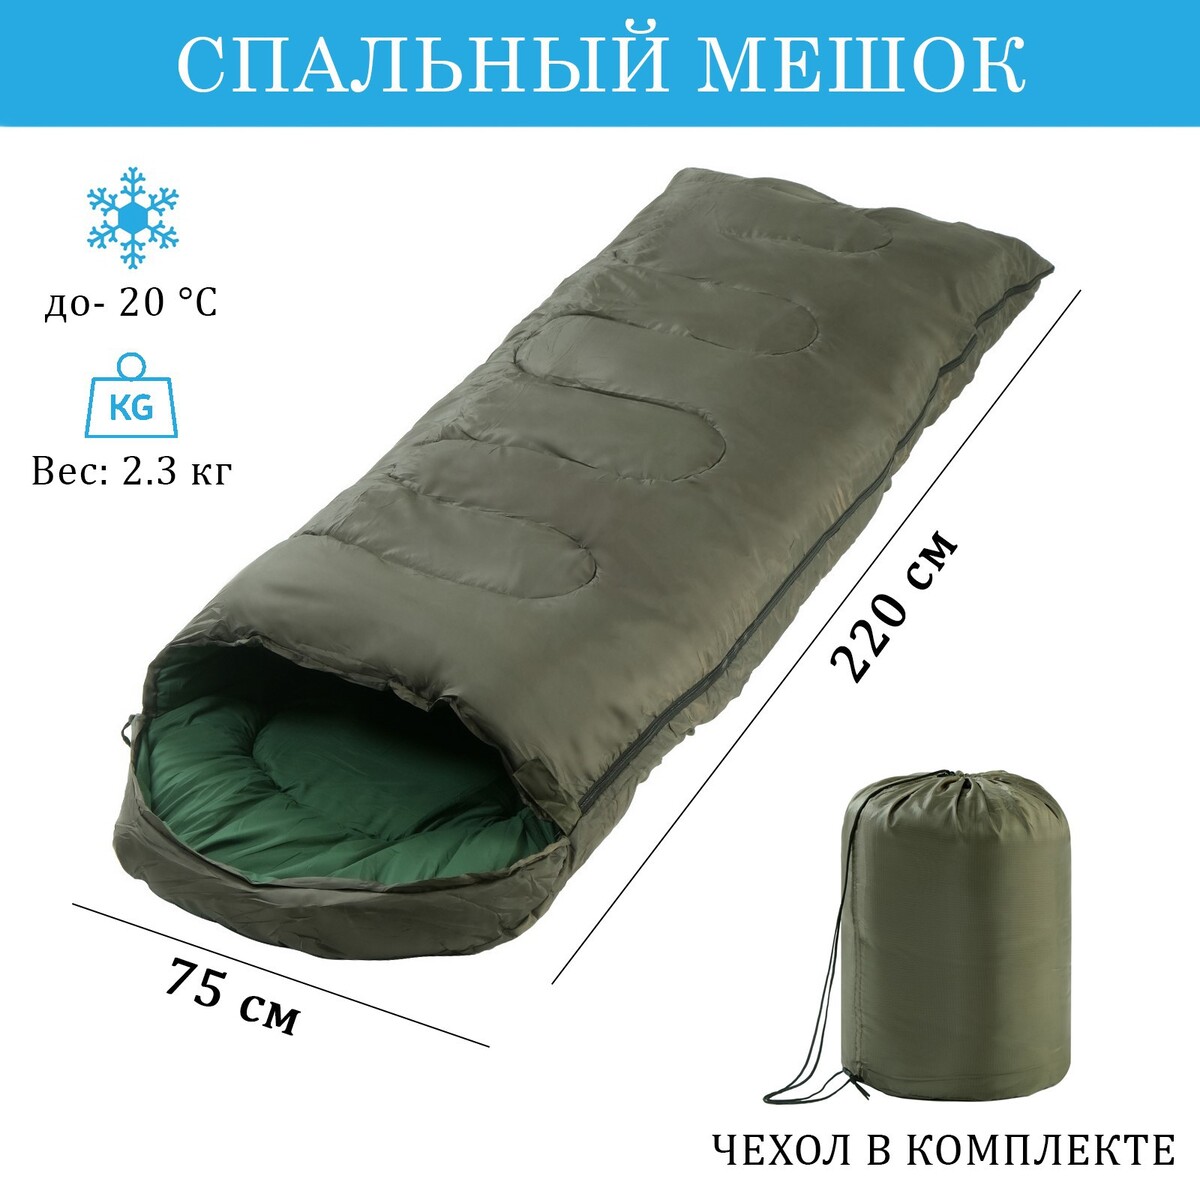 Спальный мешок, туристический, 220 х 75 см, до -20 градусов, 700 г/м2, цвет хвои спальный мешок туристический atemi t20n 100 г м2 20 c